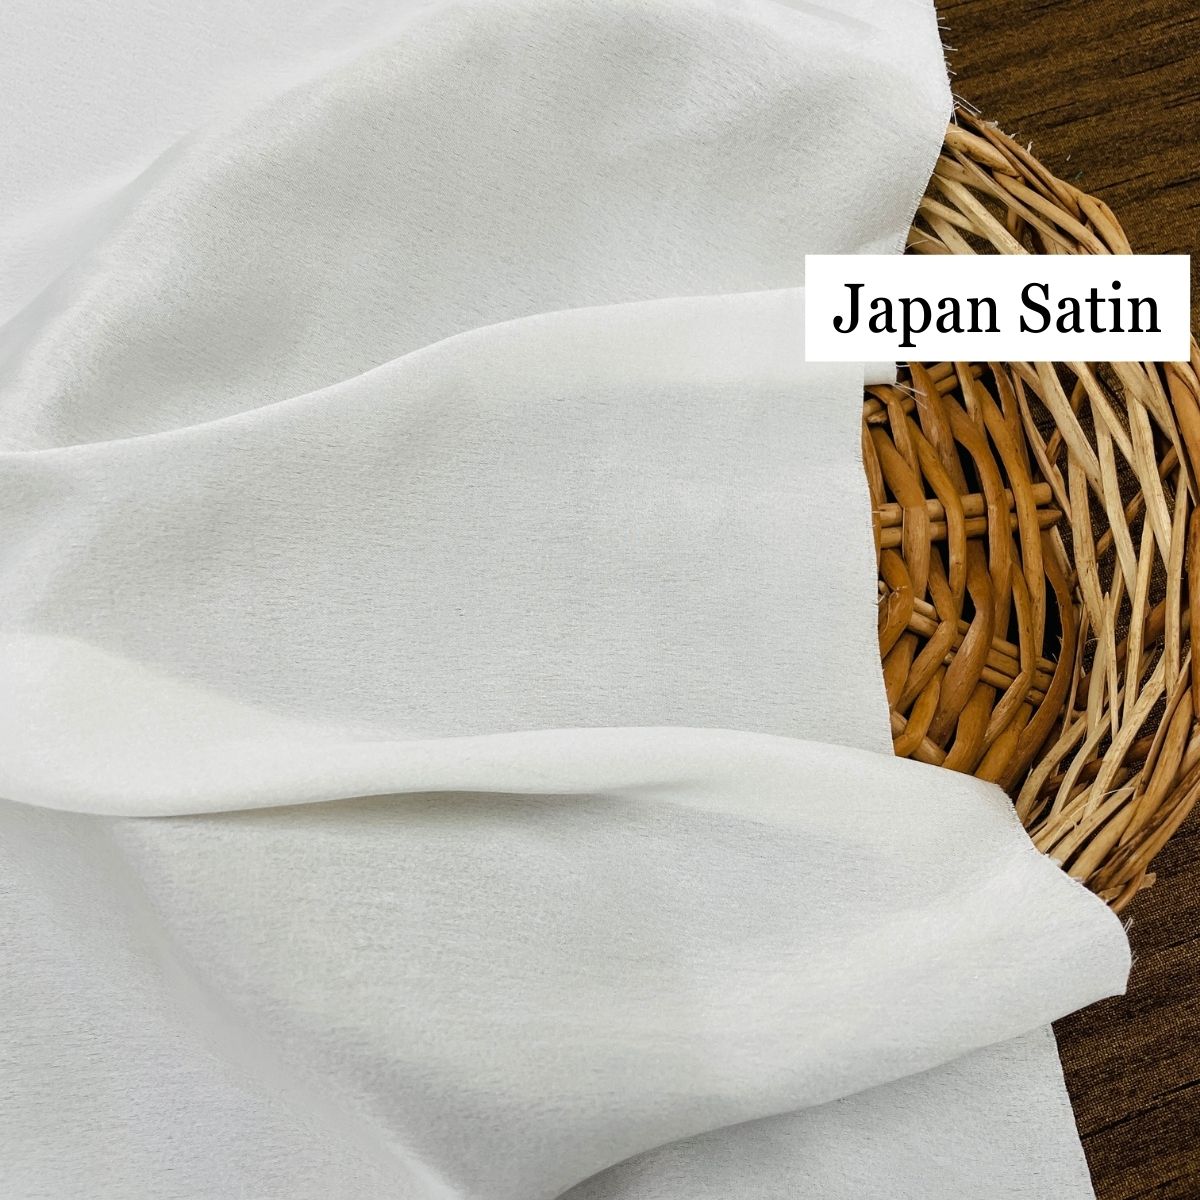 Japan Satin